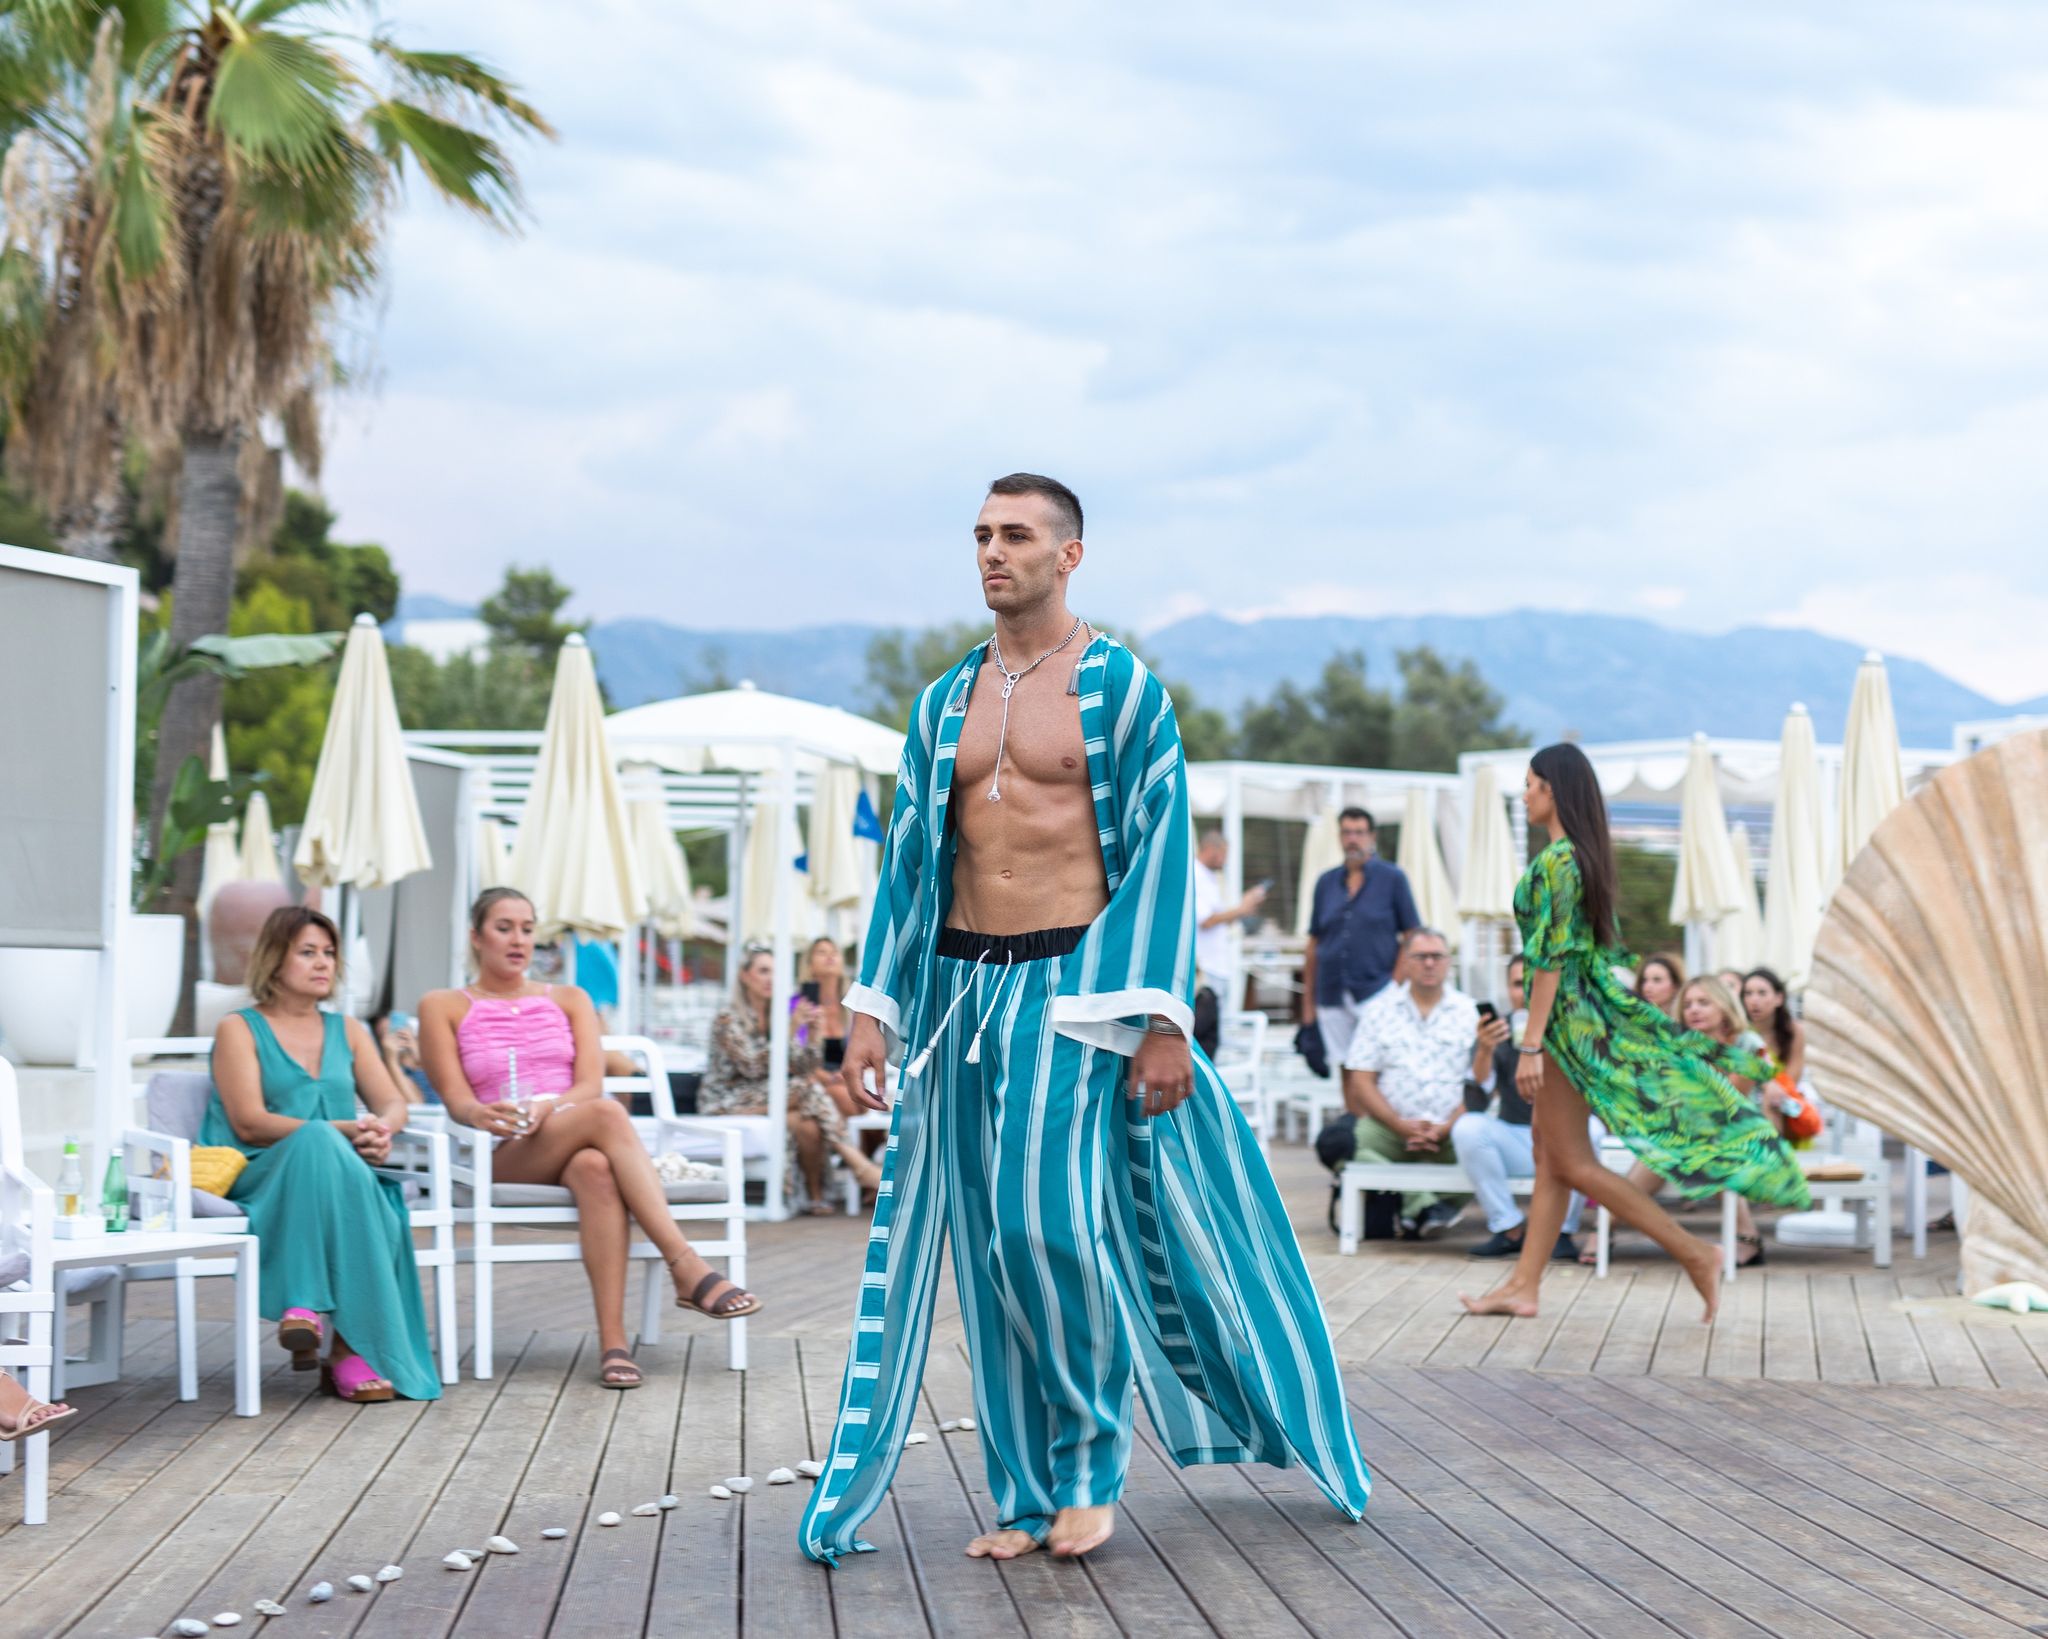 Predstavljena je nova kolekcija kupaćih kostima i haljina splitskih modnih brendova Anovi i No7 by Šime Kovačević